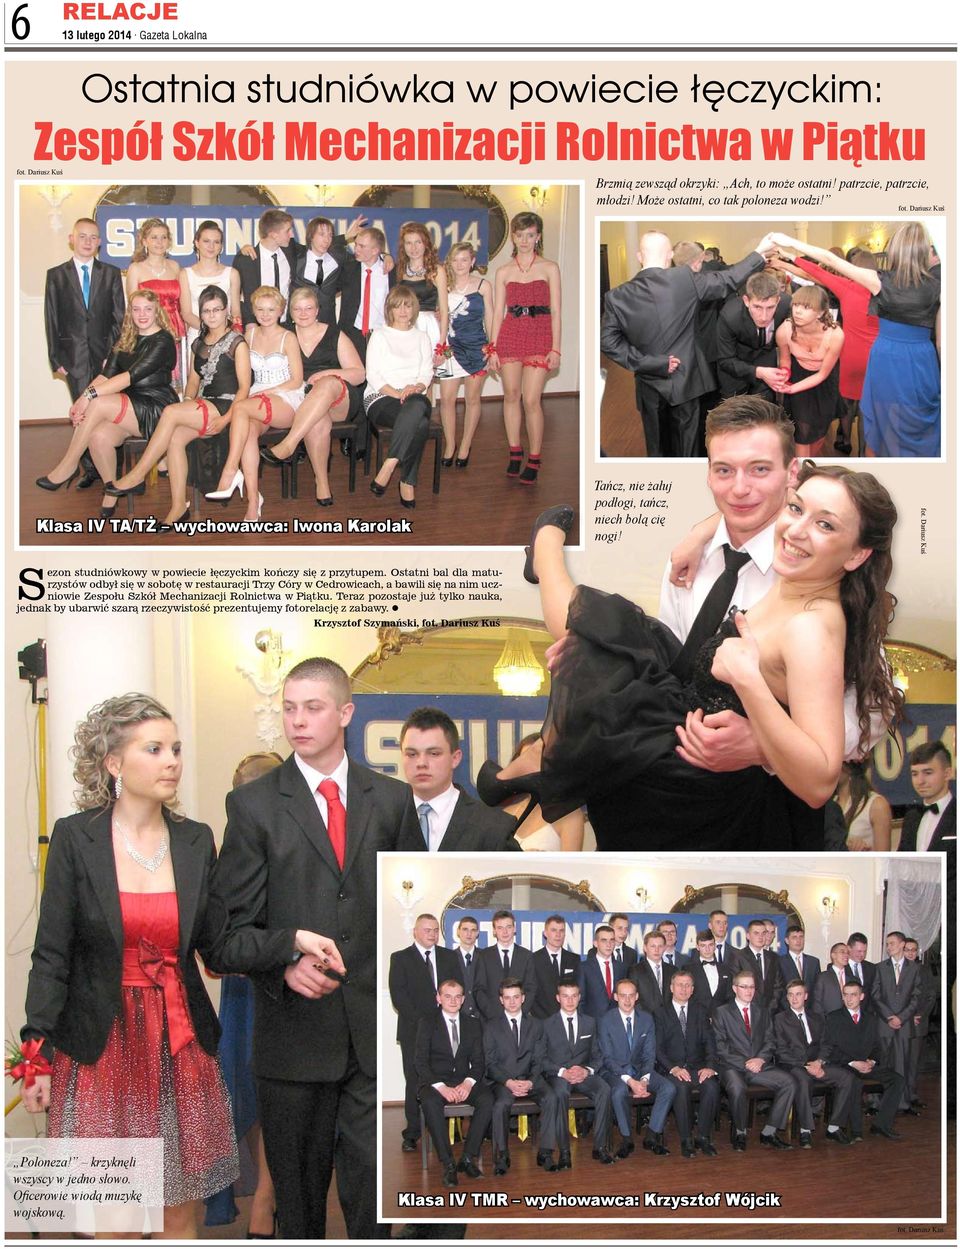 Ostatni bal dla maturzystów odbył się w sobotę w restauracji Trzy Córy w Cedrowicach, a bawili się na nim uczniowie Zespołu Szkół Mechanizacji Rolnictwa w Piątku.